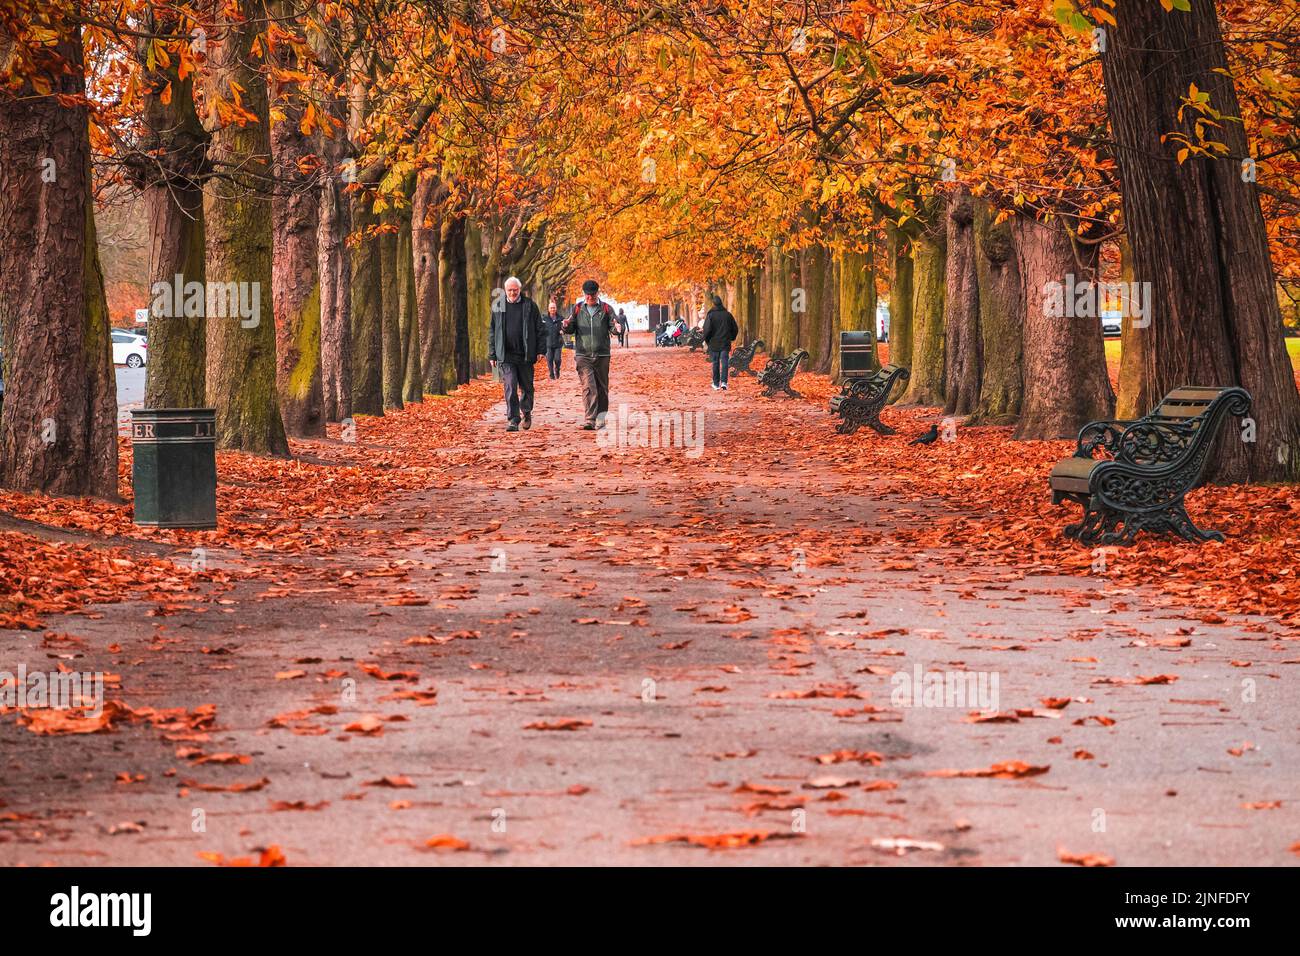 Londres, Royaume-Uni - 3 novembre 2021 - des hommes âgés marchant sur un sentier à arbres dans le parc de Greenwich pendant la saison d'automne Banque D'Images